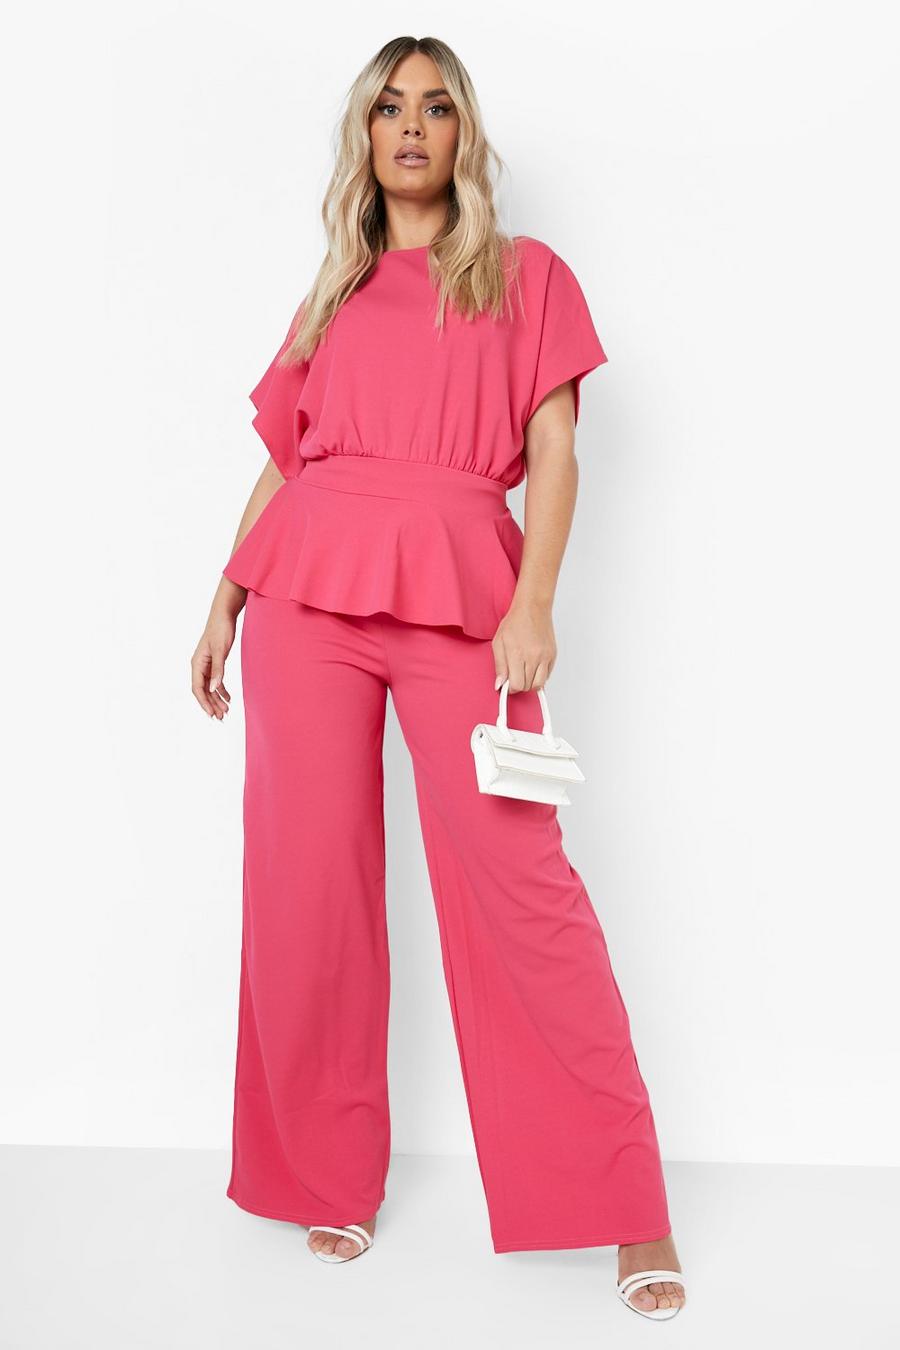 Pantaloni coordinati Plus Size a gamba ampia con volant e laccetti, Hot pink rosa